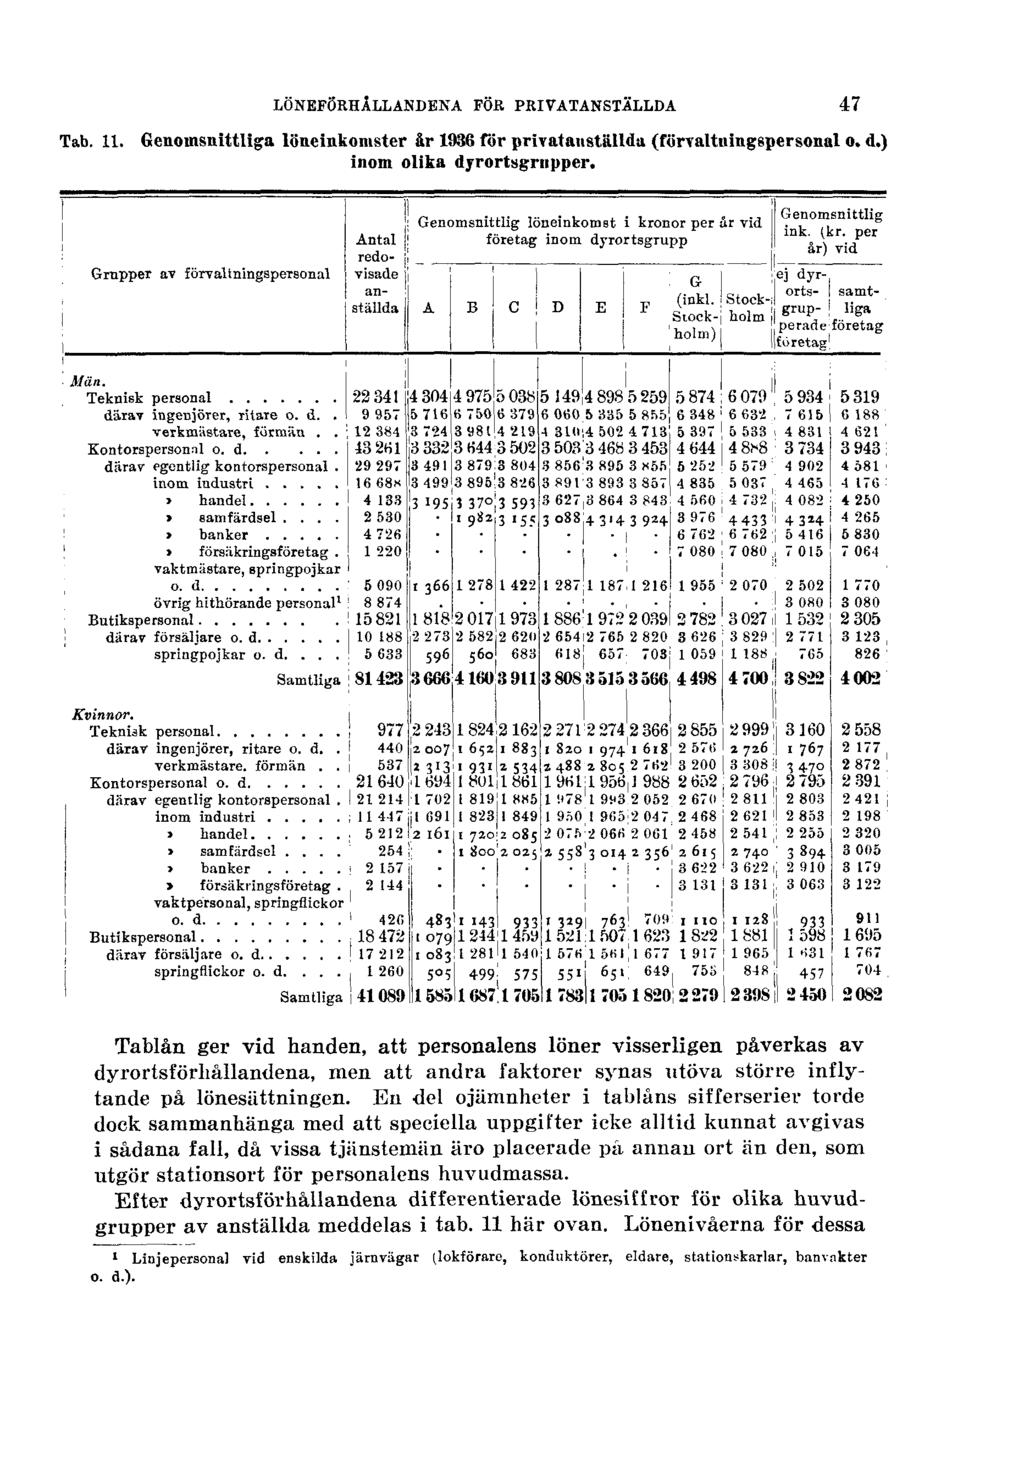 LÖNEFÖRHÅLLANDENA FÖR PRIVATANSTÄLLDA Tab. 11. Genomsnittliga löneinkomster år 1936 för privatanställda (förvaltningspersonal o. d.) inom olika dyrortsgrupper.